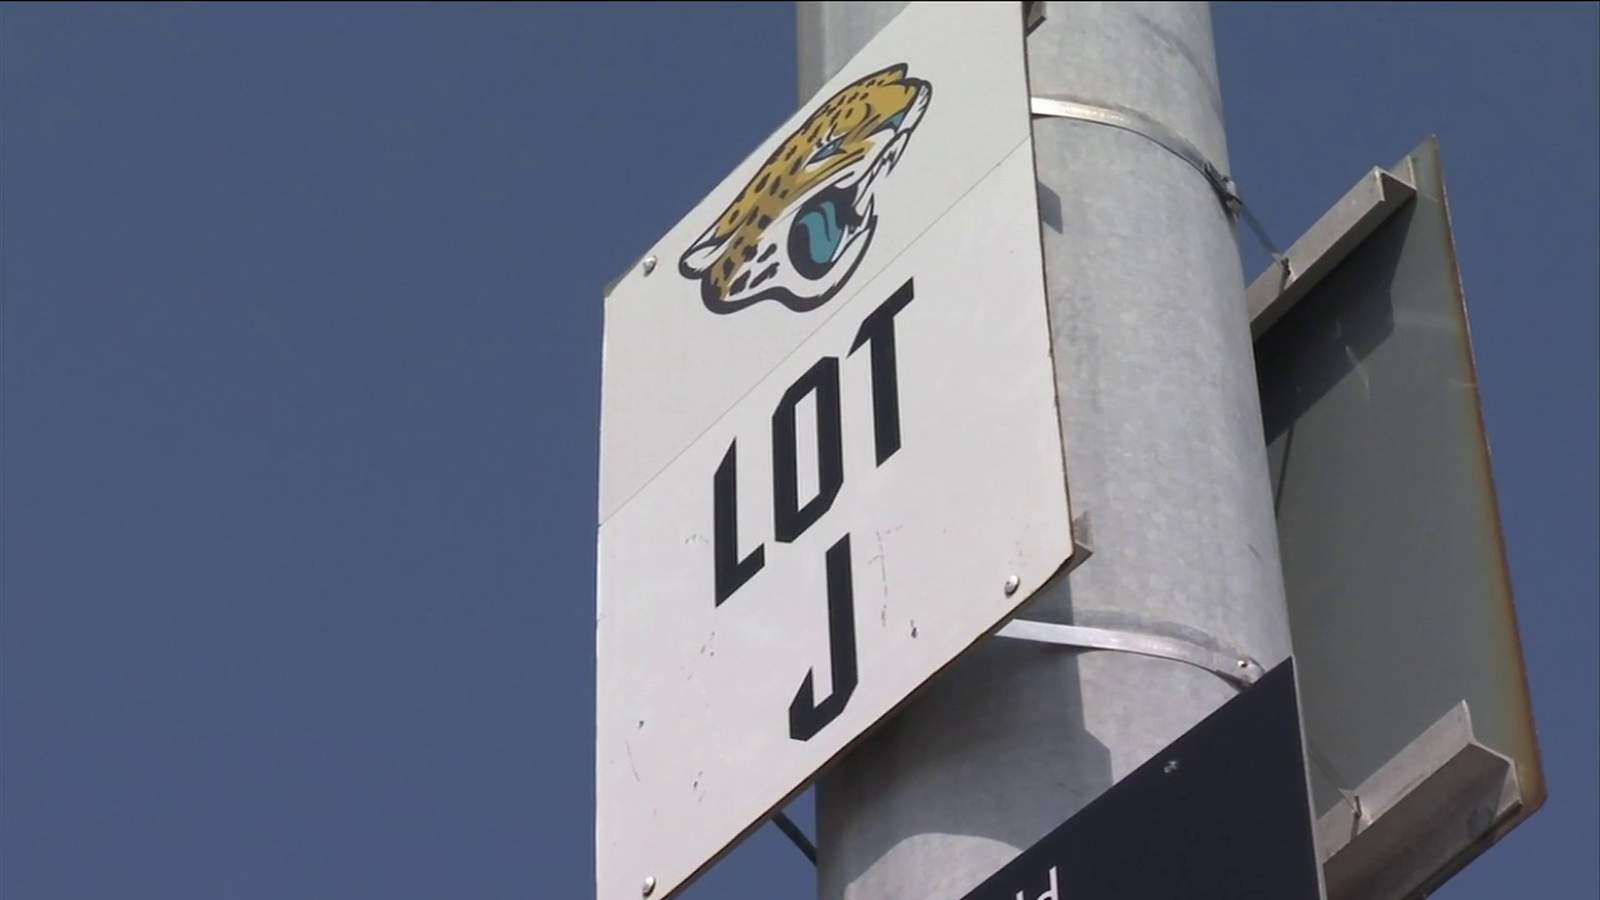 Jaguars reps discuss plans for Lot J, hear from public